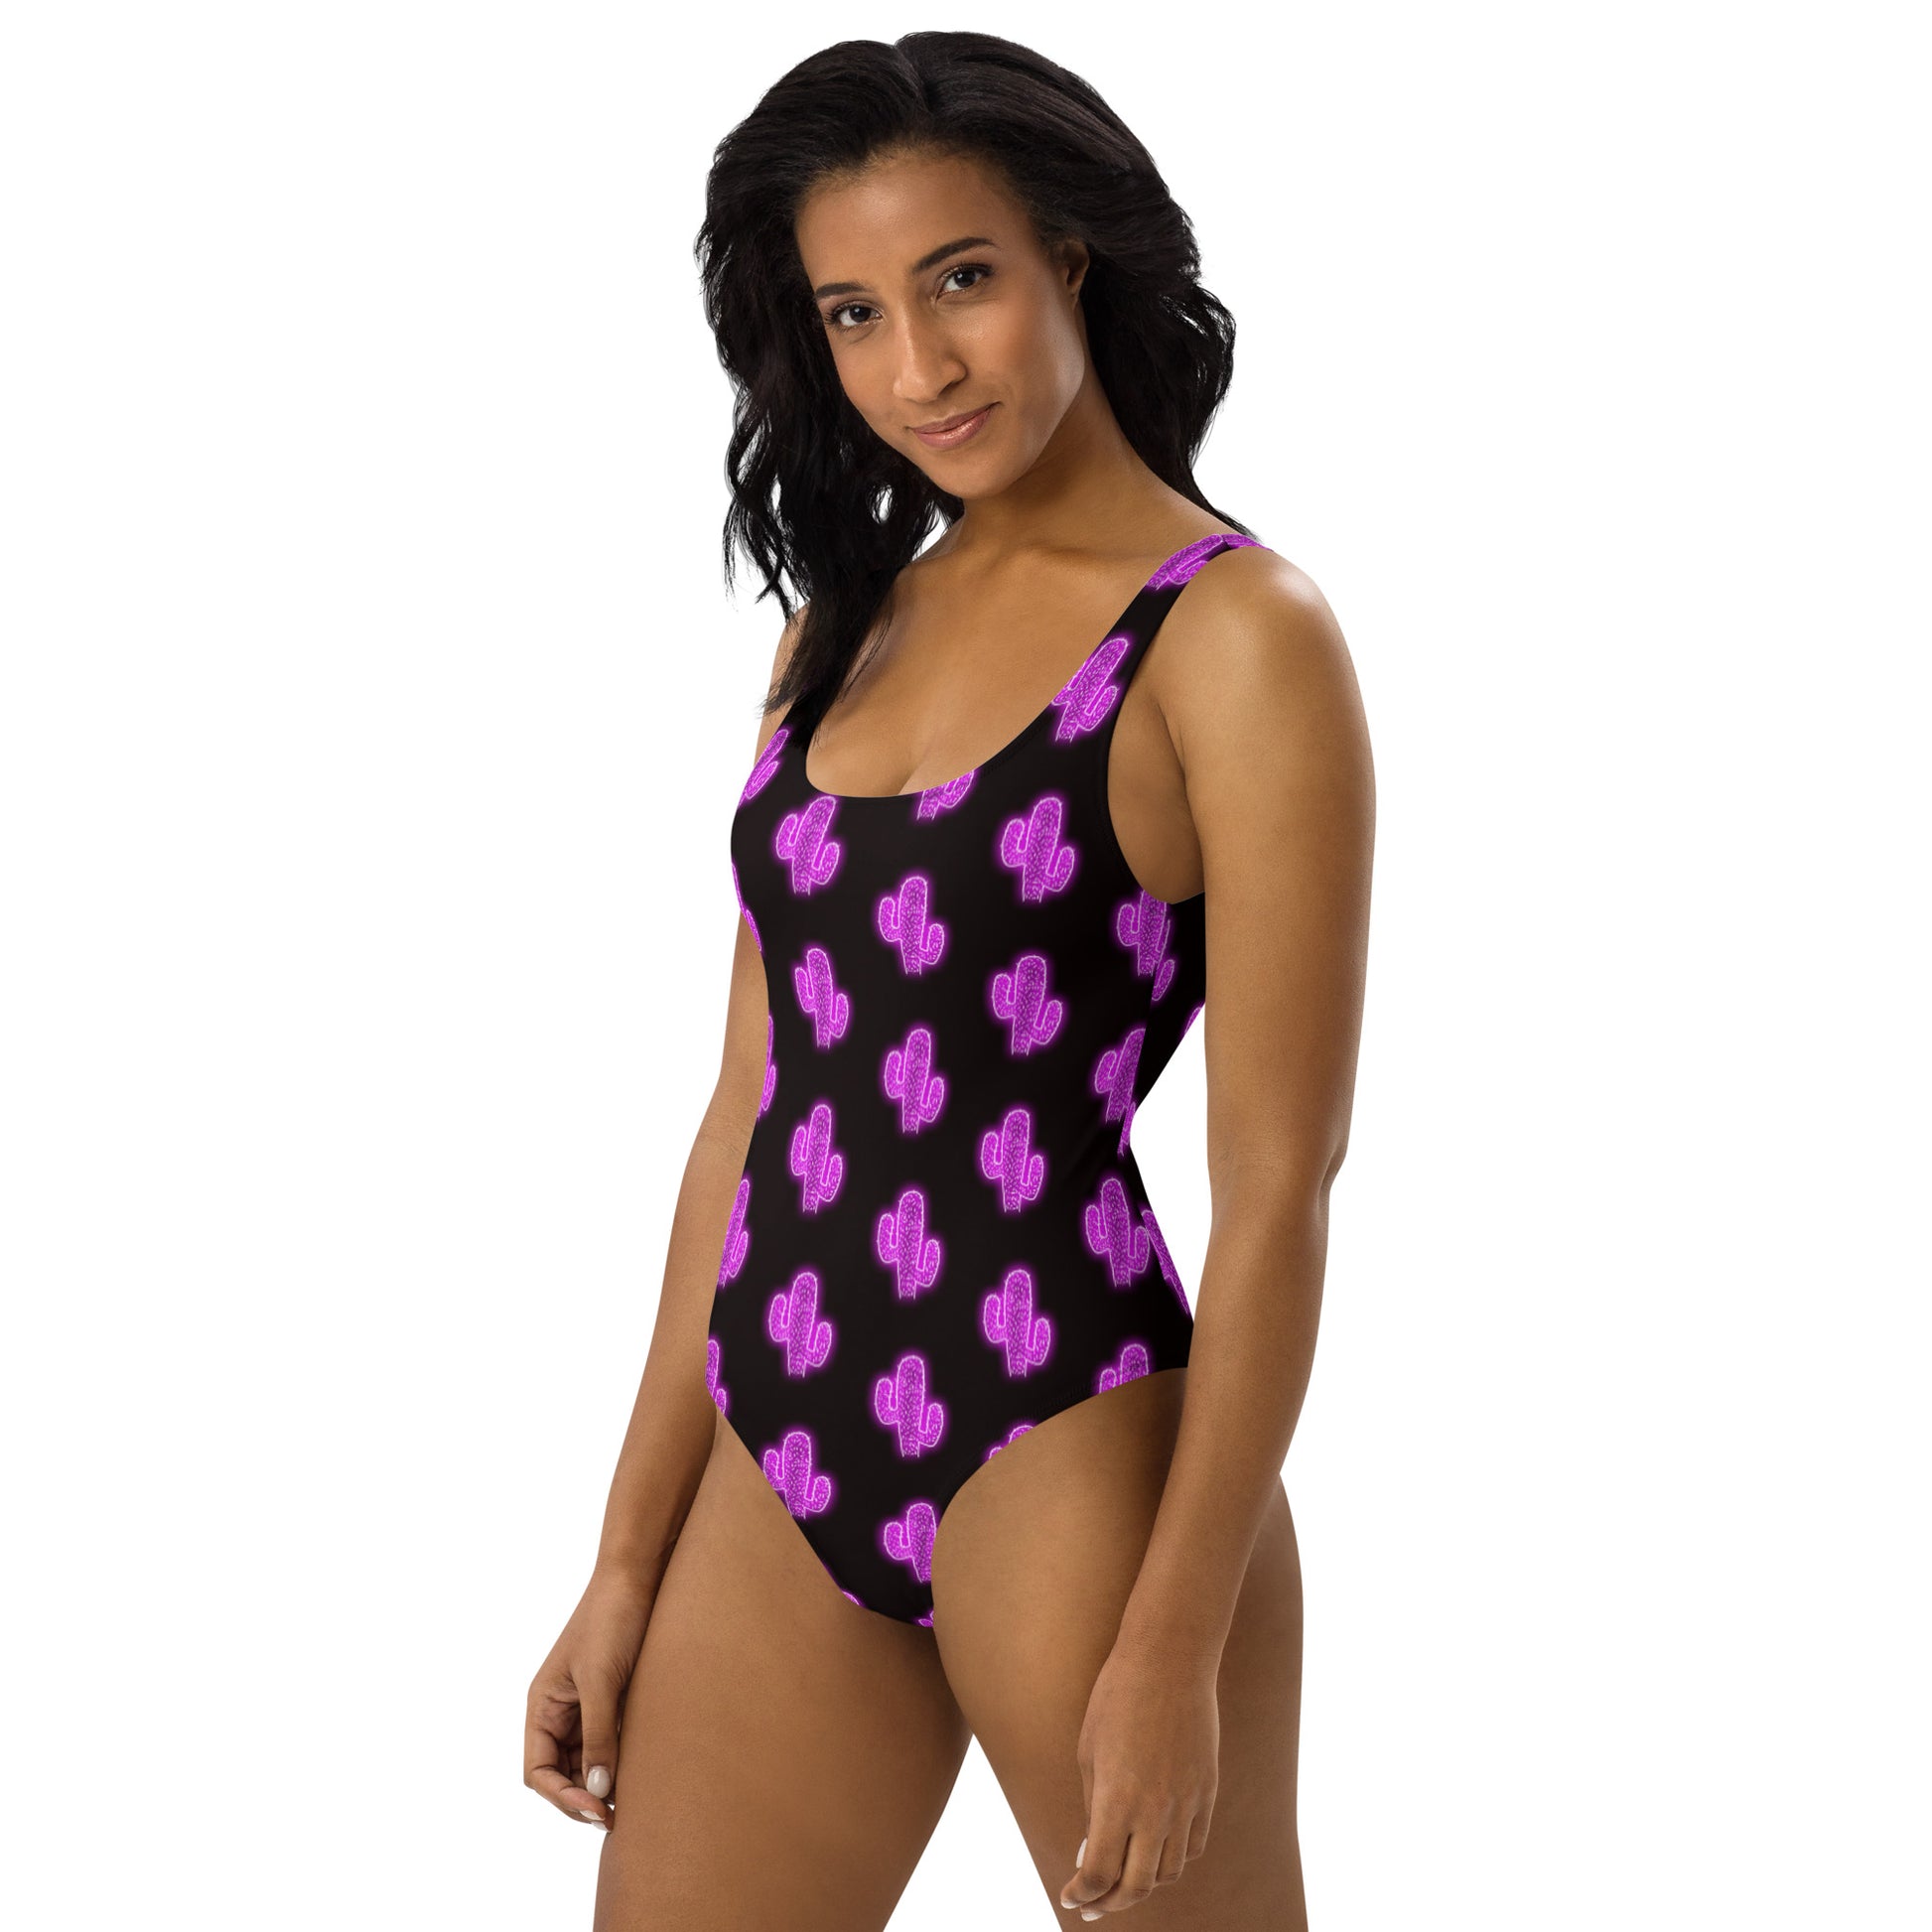 Yeehaw Purple Neon Cactus One-Piece Swimsuit - #op, cactus, cactus print, neon, one piece, purple, swim, swim suit, swim wear, swimming -  - Baha Ranch Western Wear